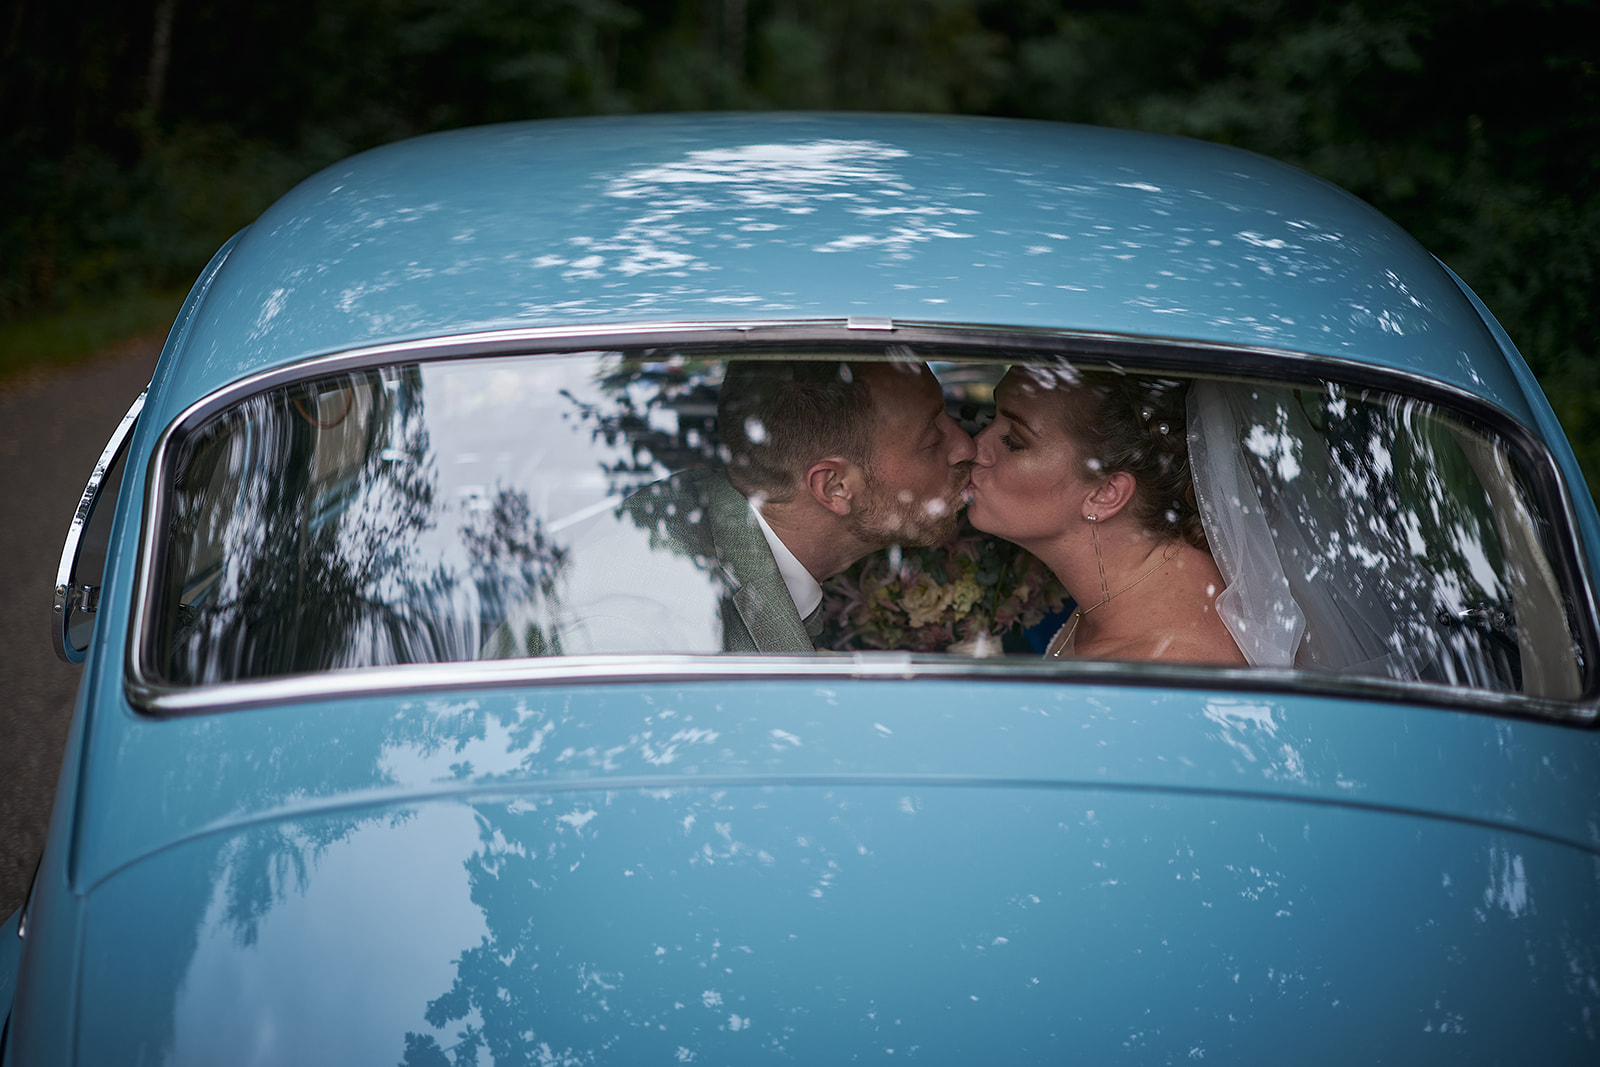 Trouwen in het sprookjesachtige Twiske: de trouwshoot en bruidsfotografie van Liëla en Jeffrey, vastgelegd door Stefan S